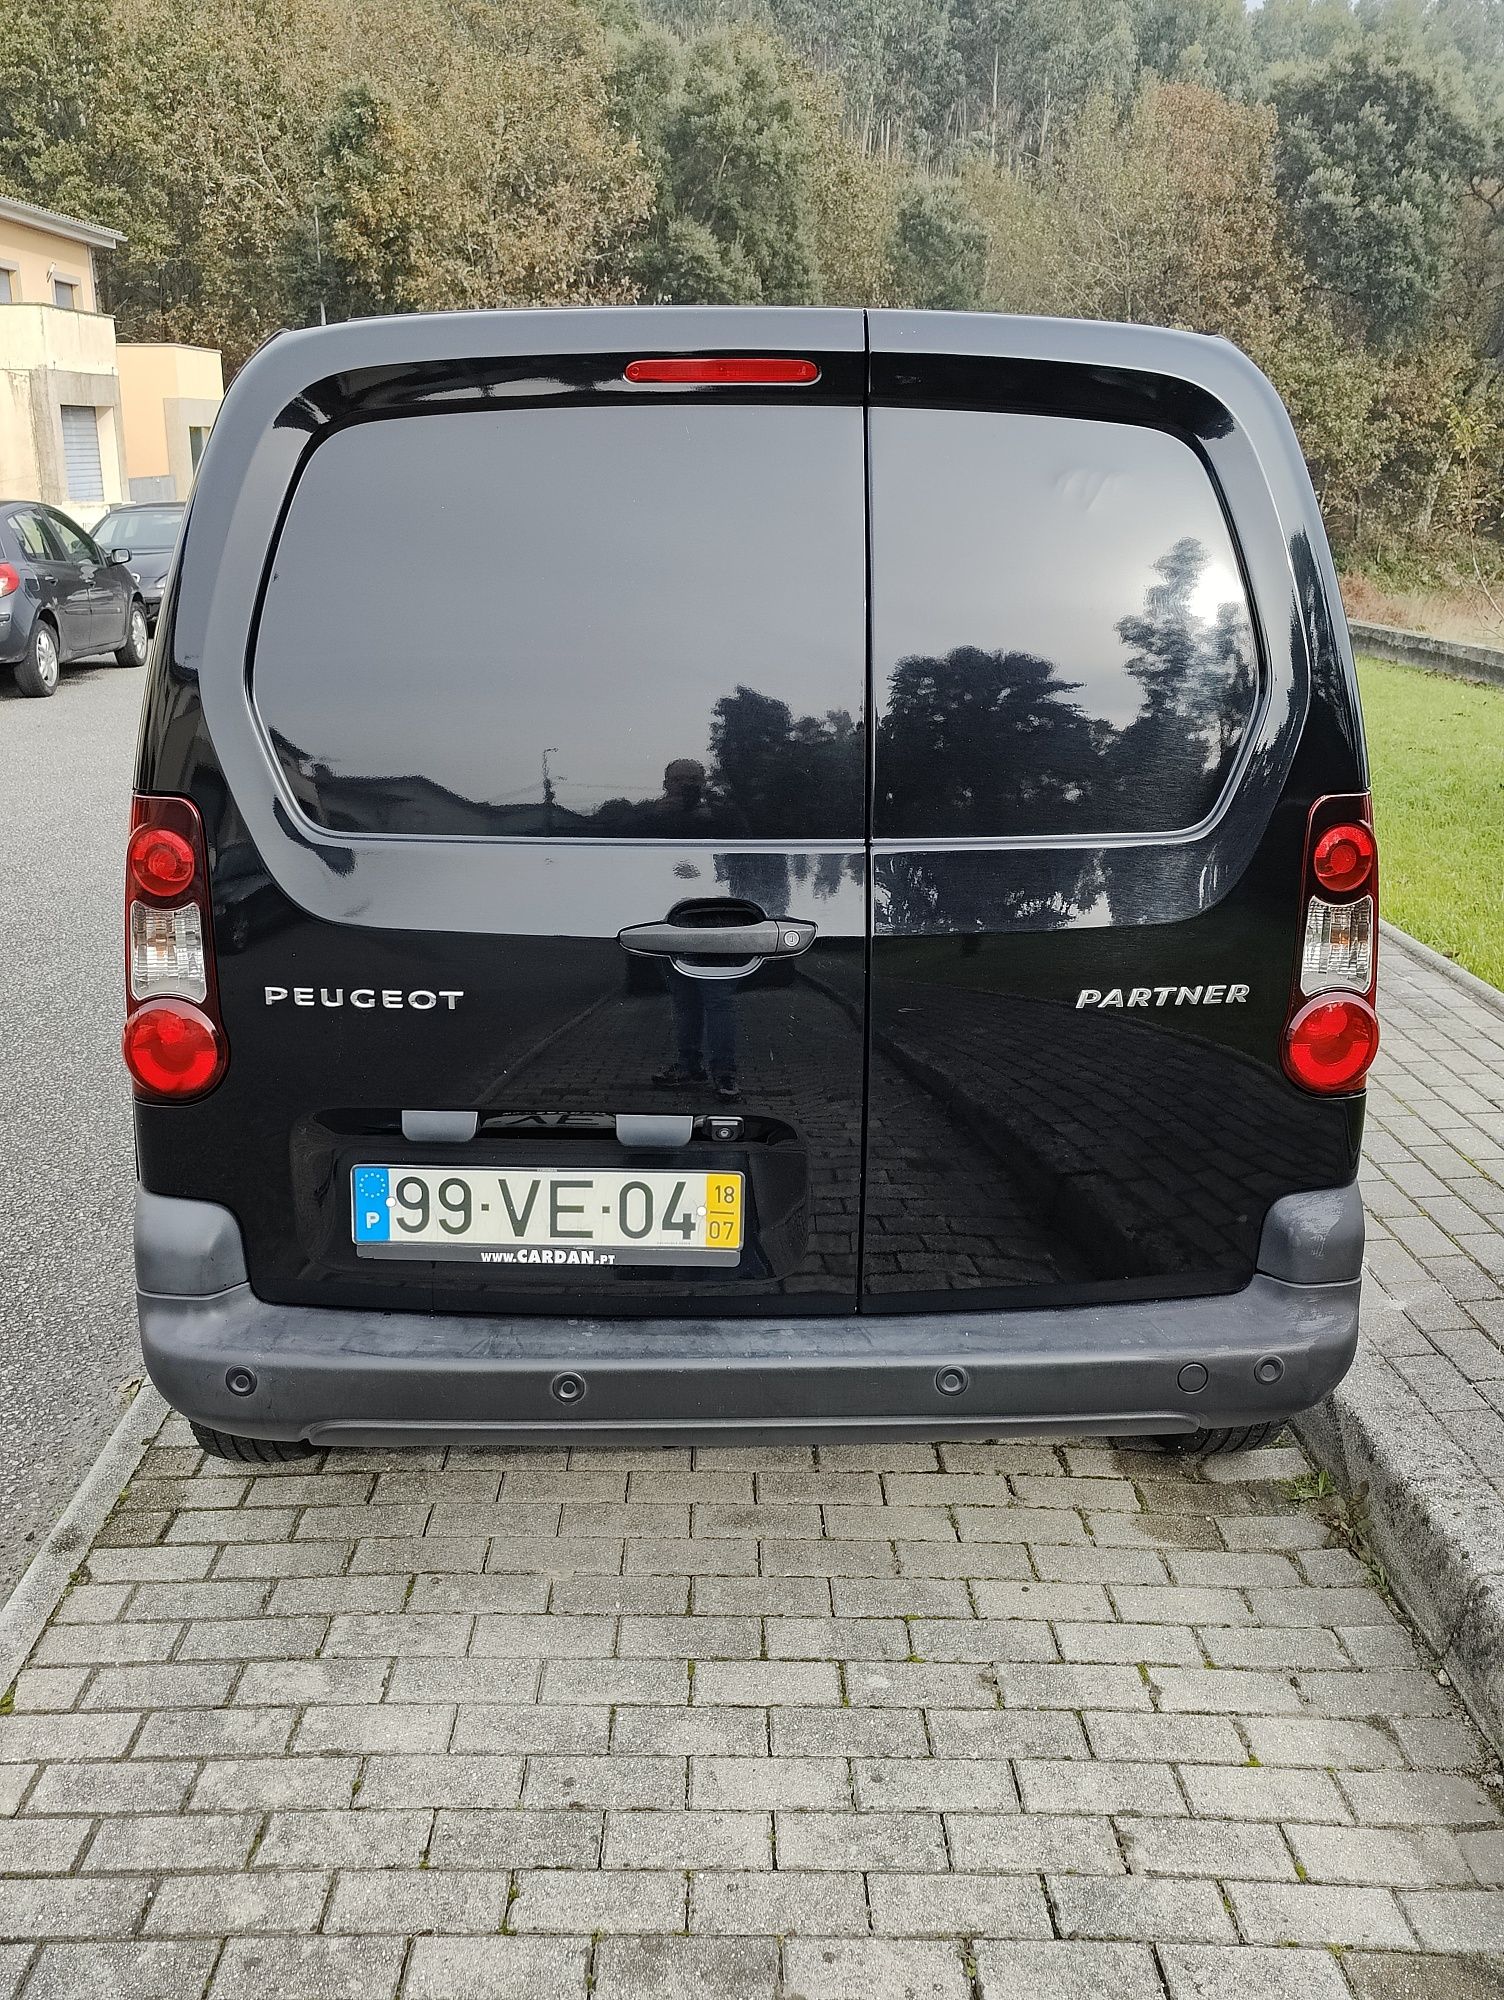 Peugeot partner 1.6 de 2018 IVA dedutível